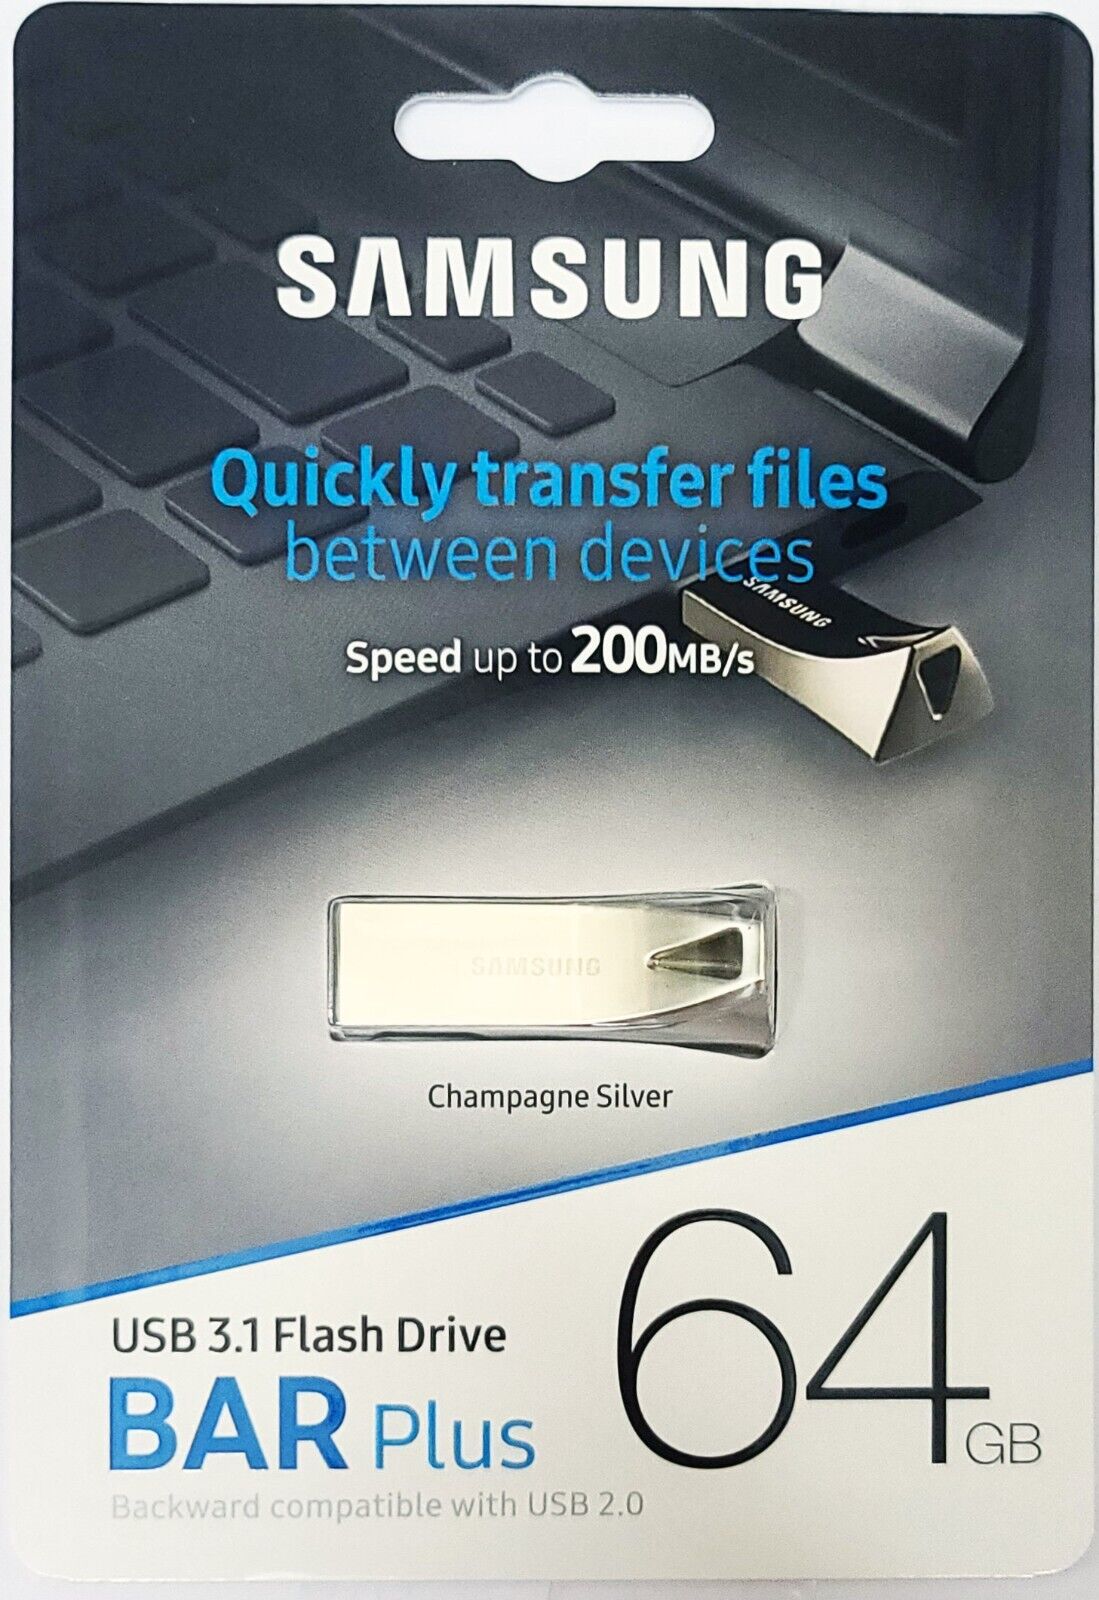 Samsung 64GB BAR Plus USB 3.1.Stick Flash Drive MUF-64BE3 USB 3.0 USB 2.0 Silver